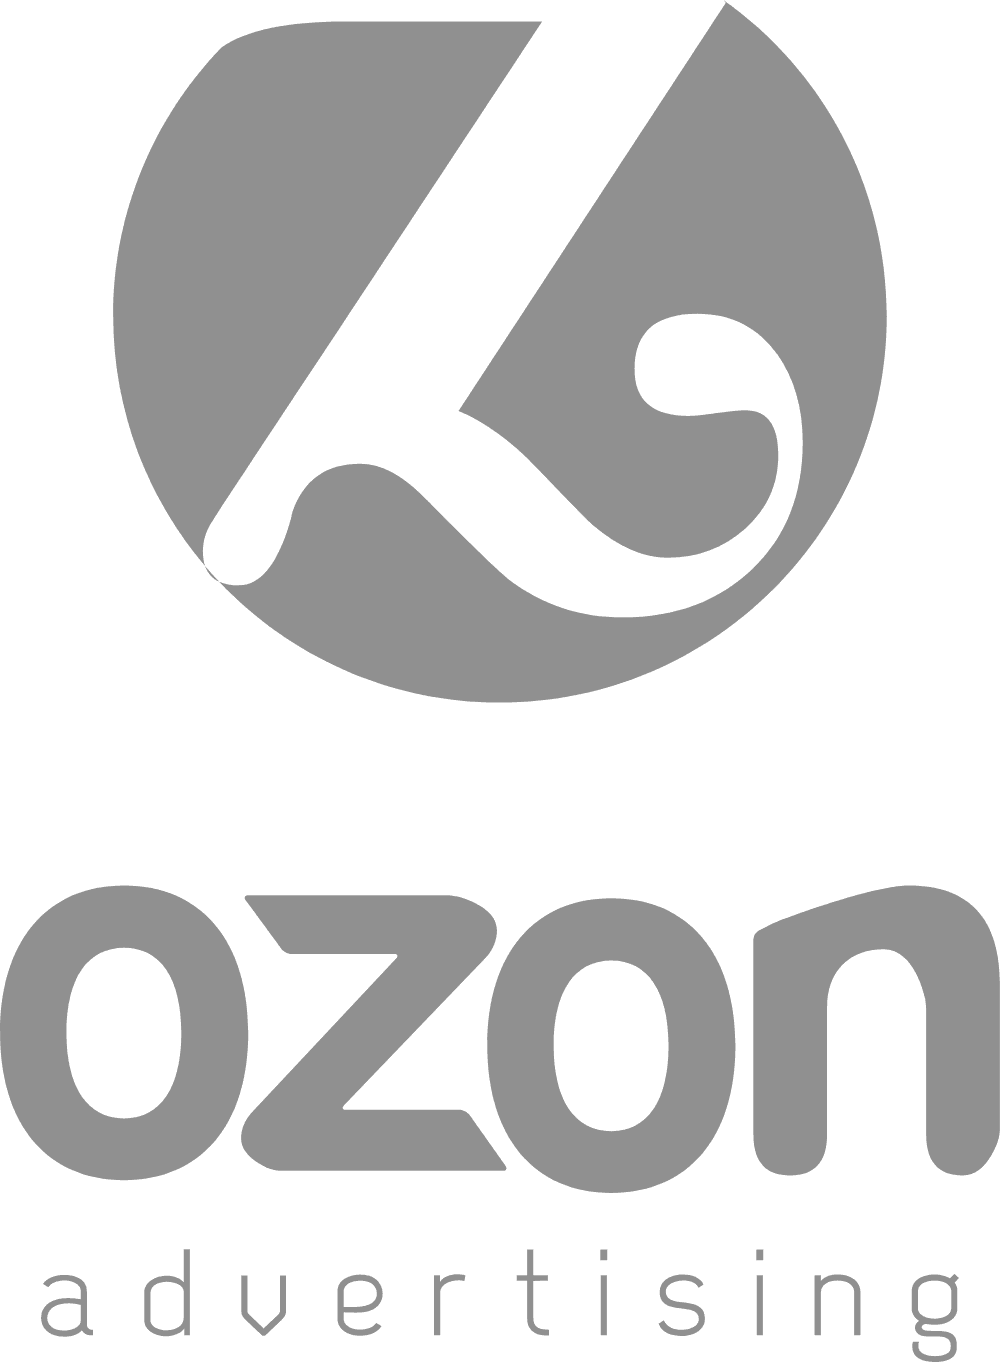 Ozon Advertising Logo download